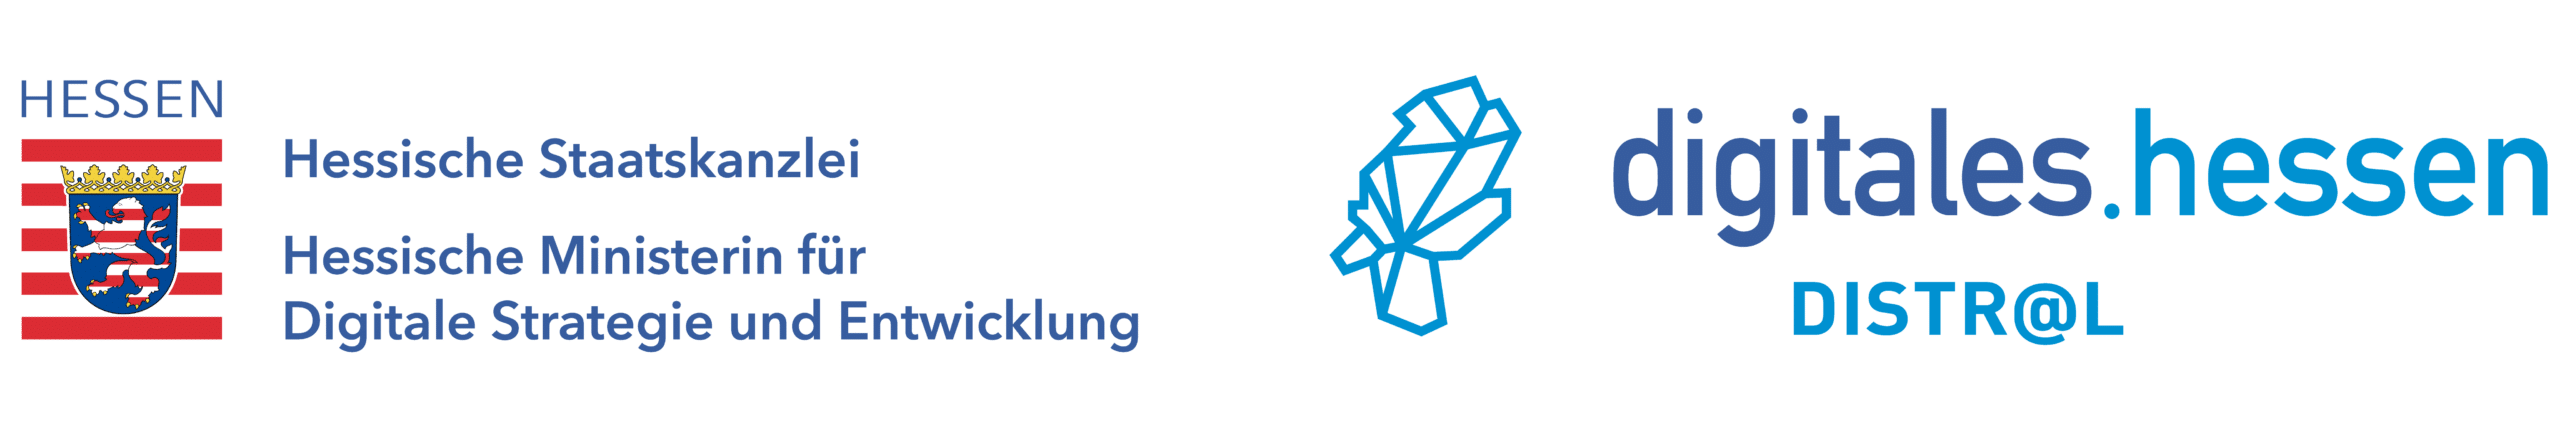 Logo Hessische Staatskanzlei - Ministerium für Digitale Strategie und Entwicklung und Distral - digitales Hessen